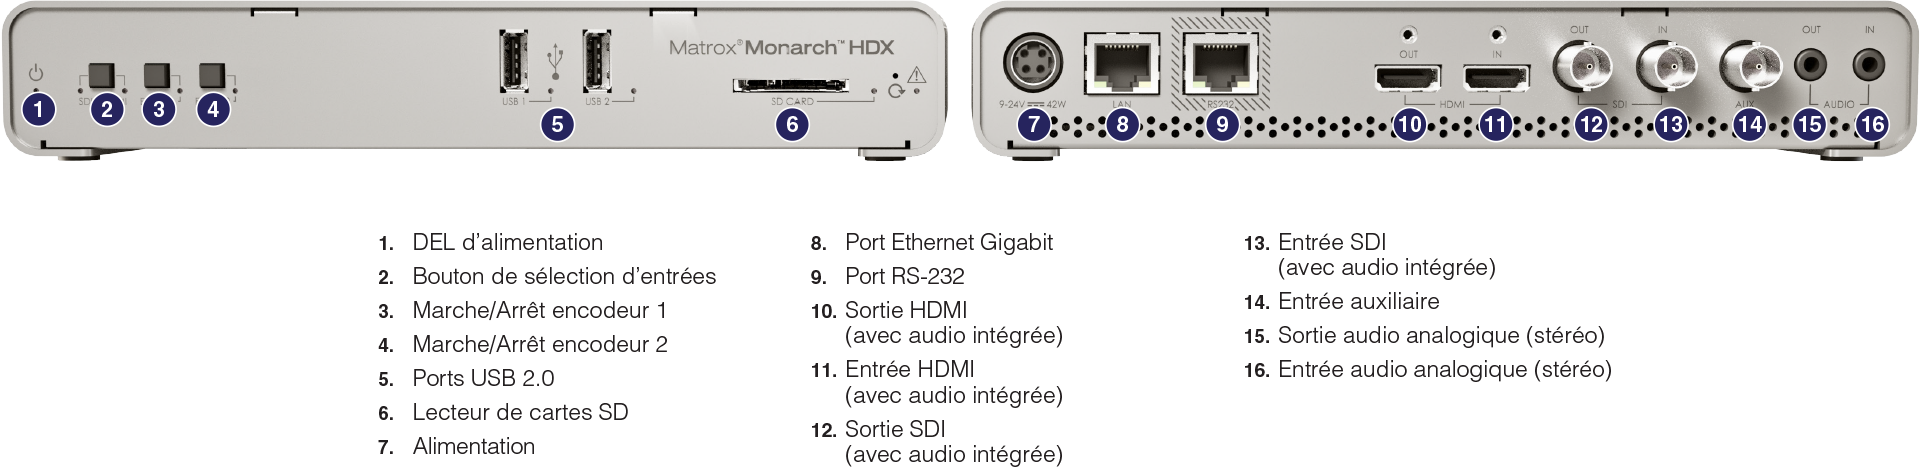 Monarch HDX Label FR